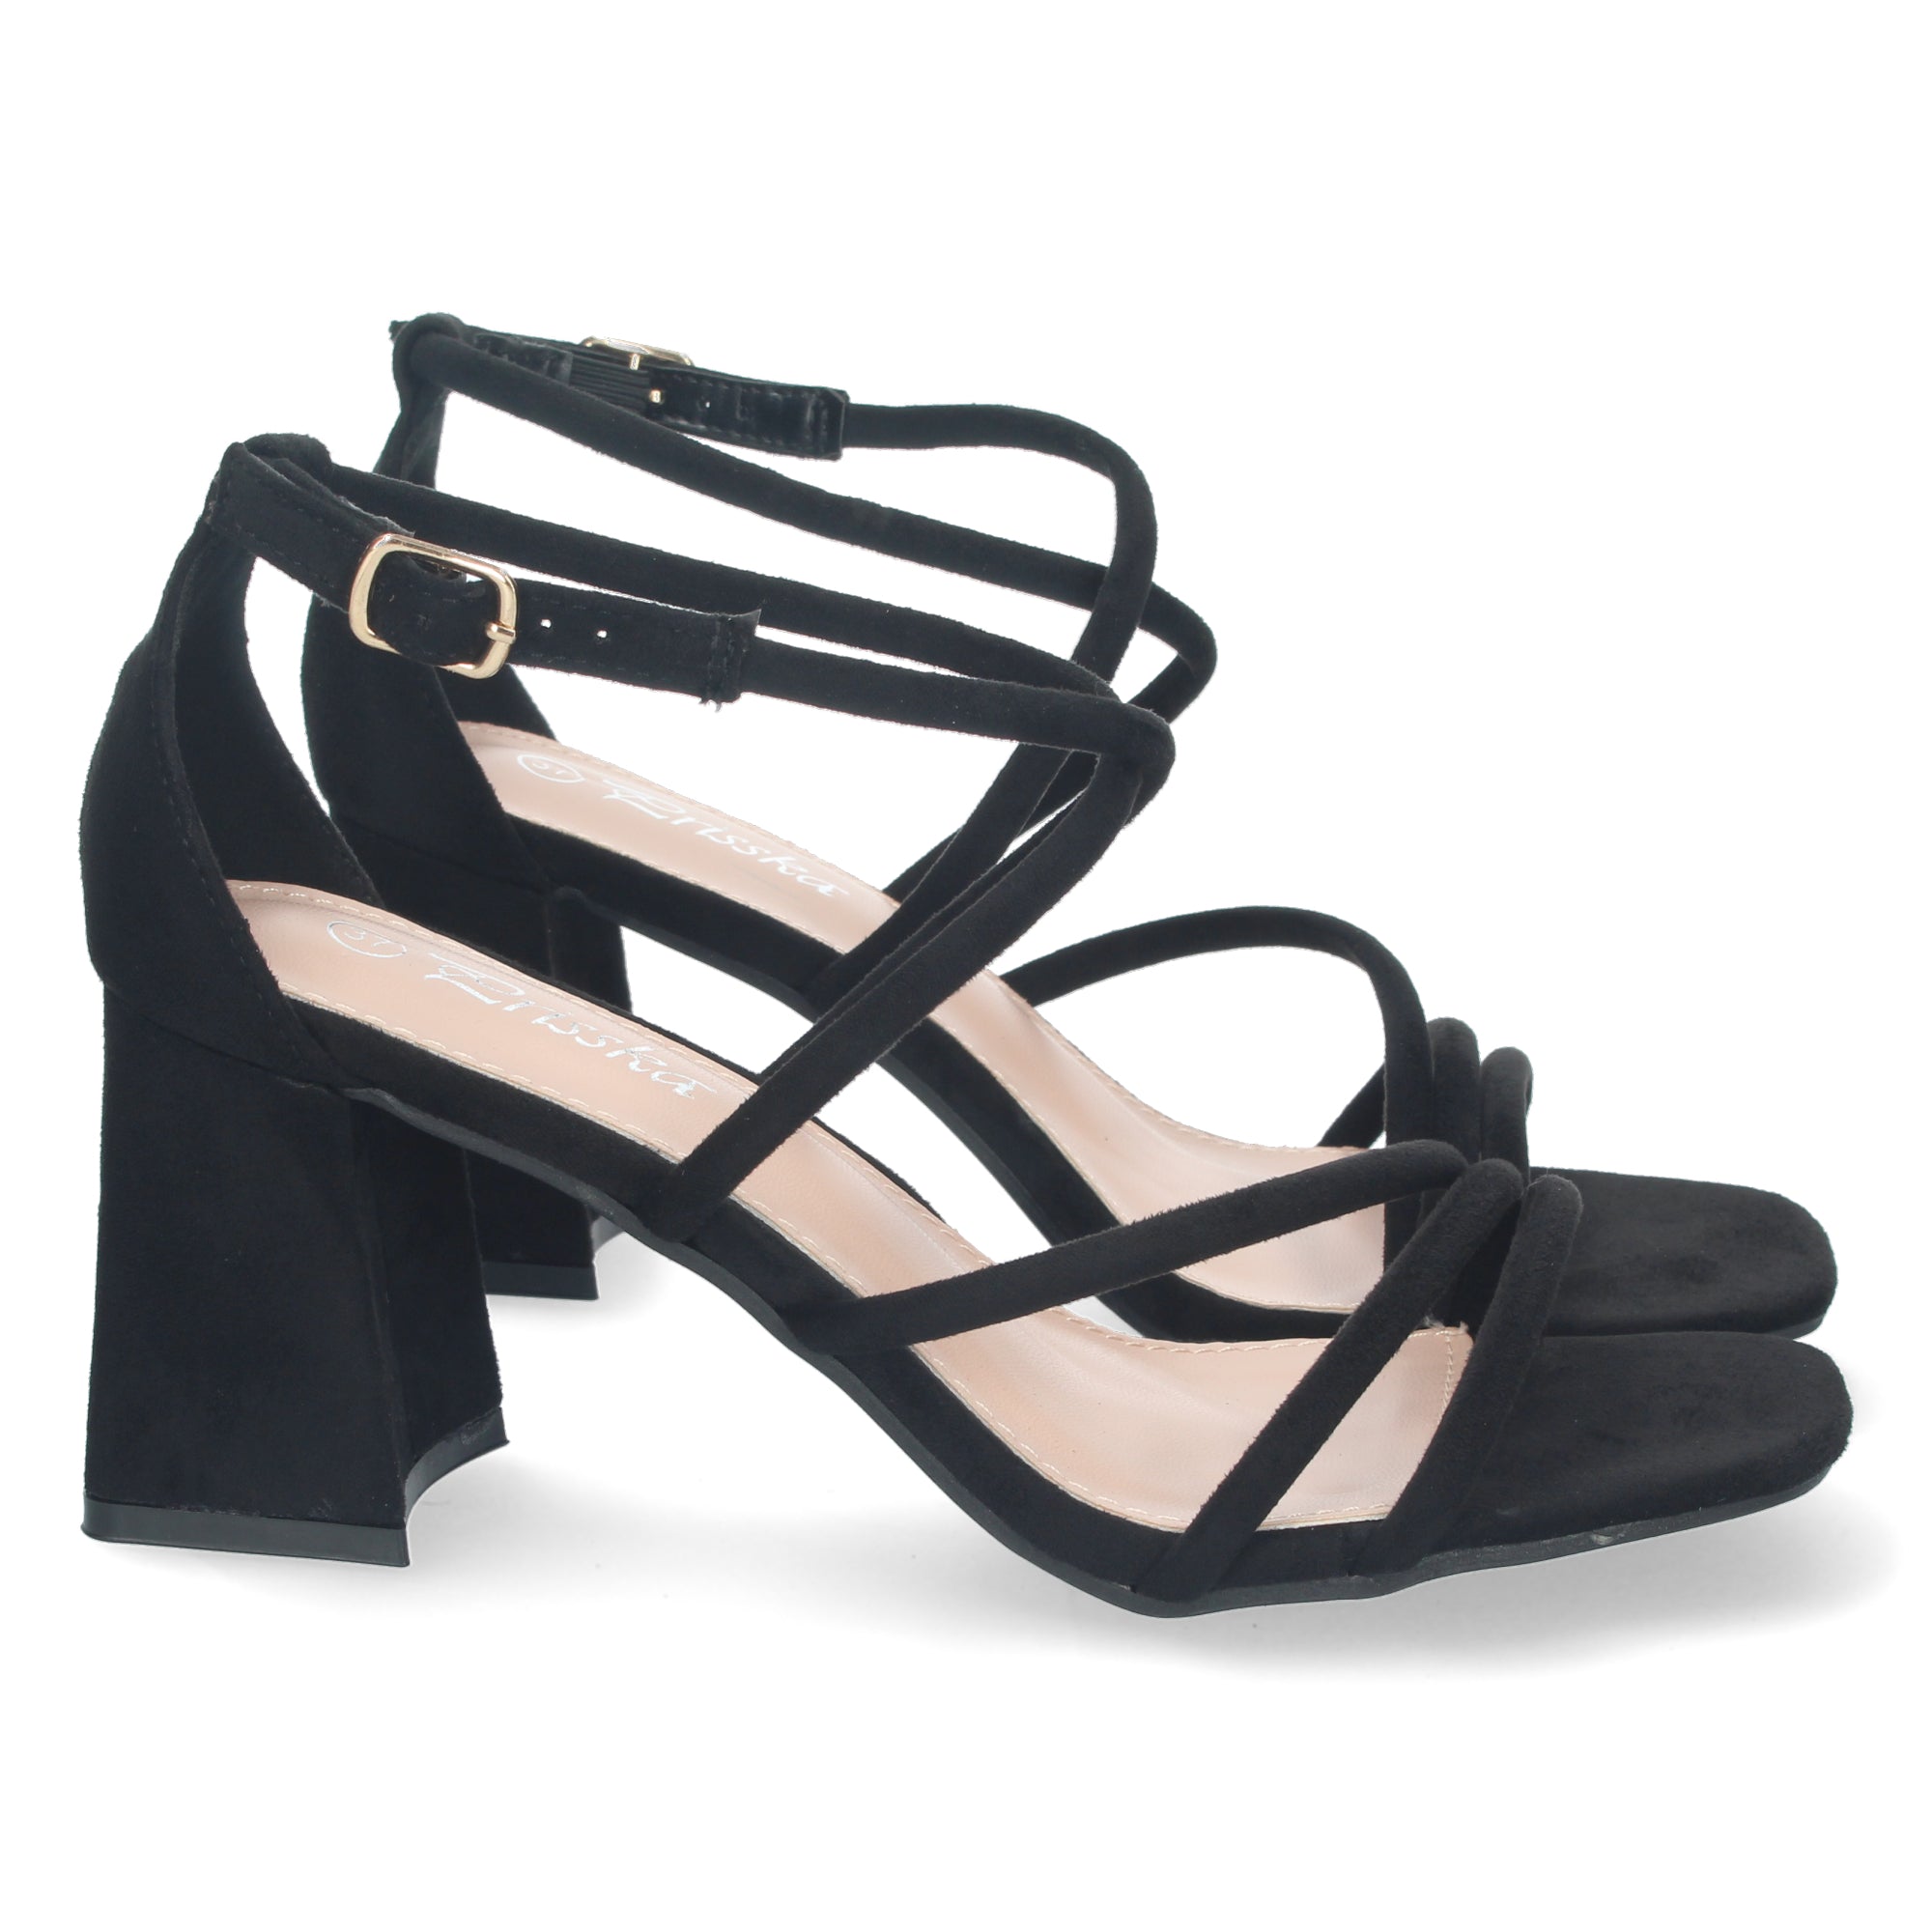 New Look block heeled sandals in black | ASOS